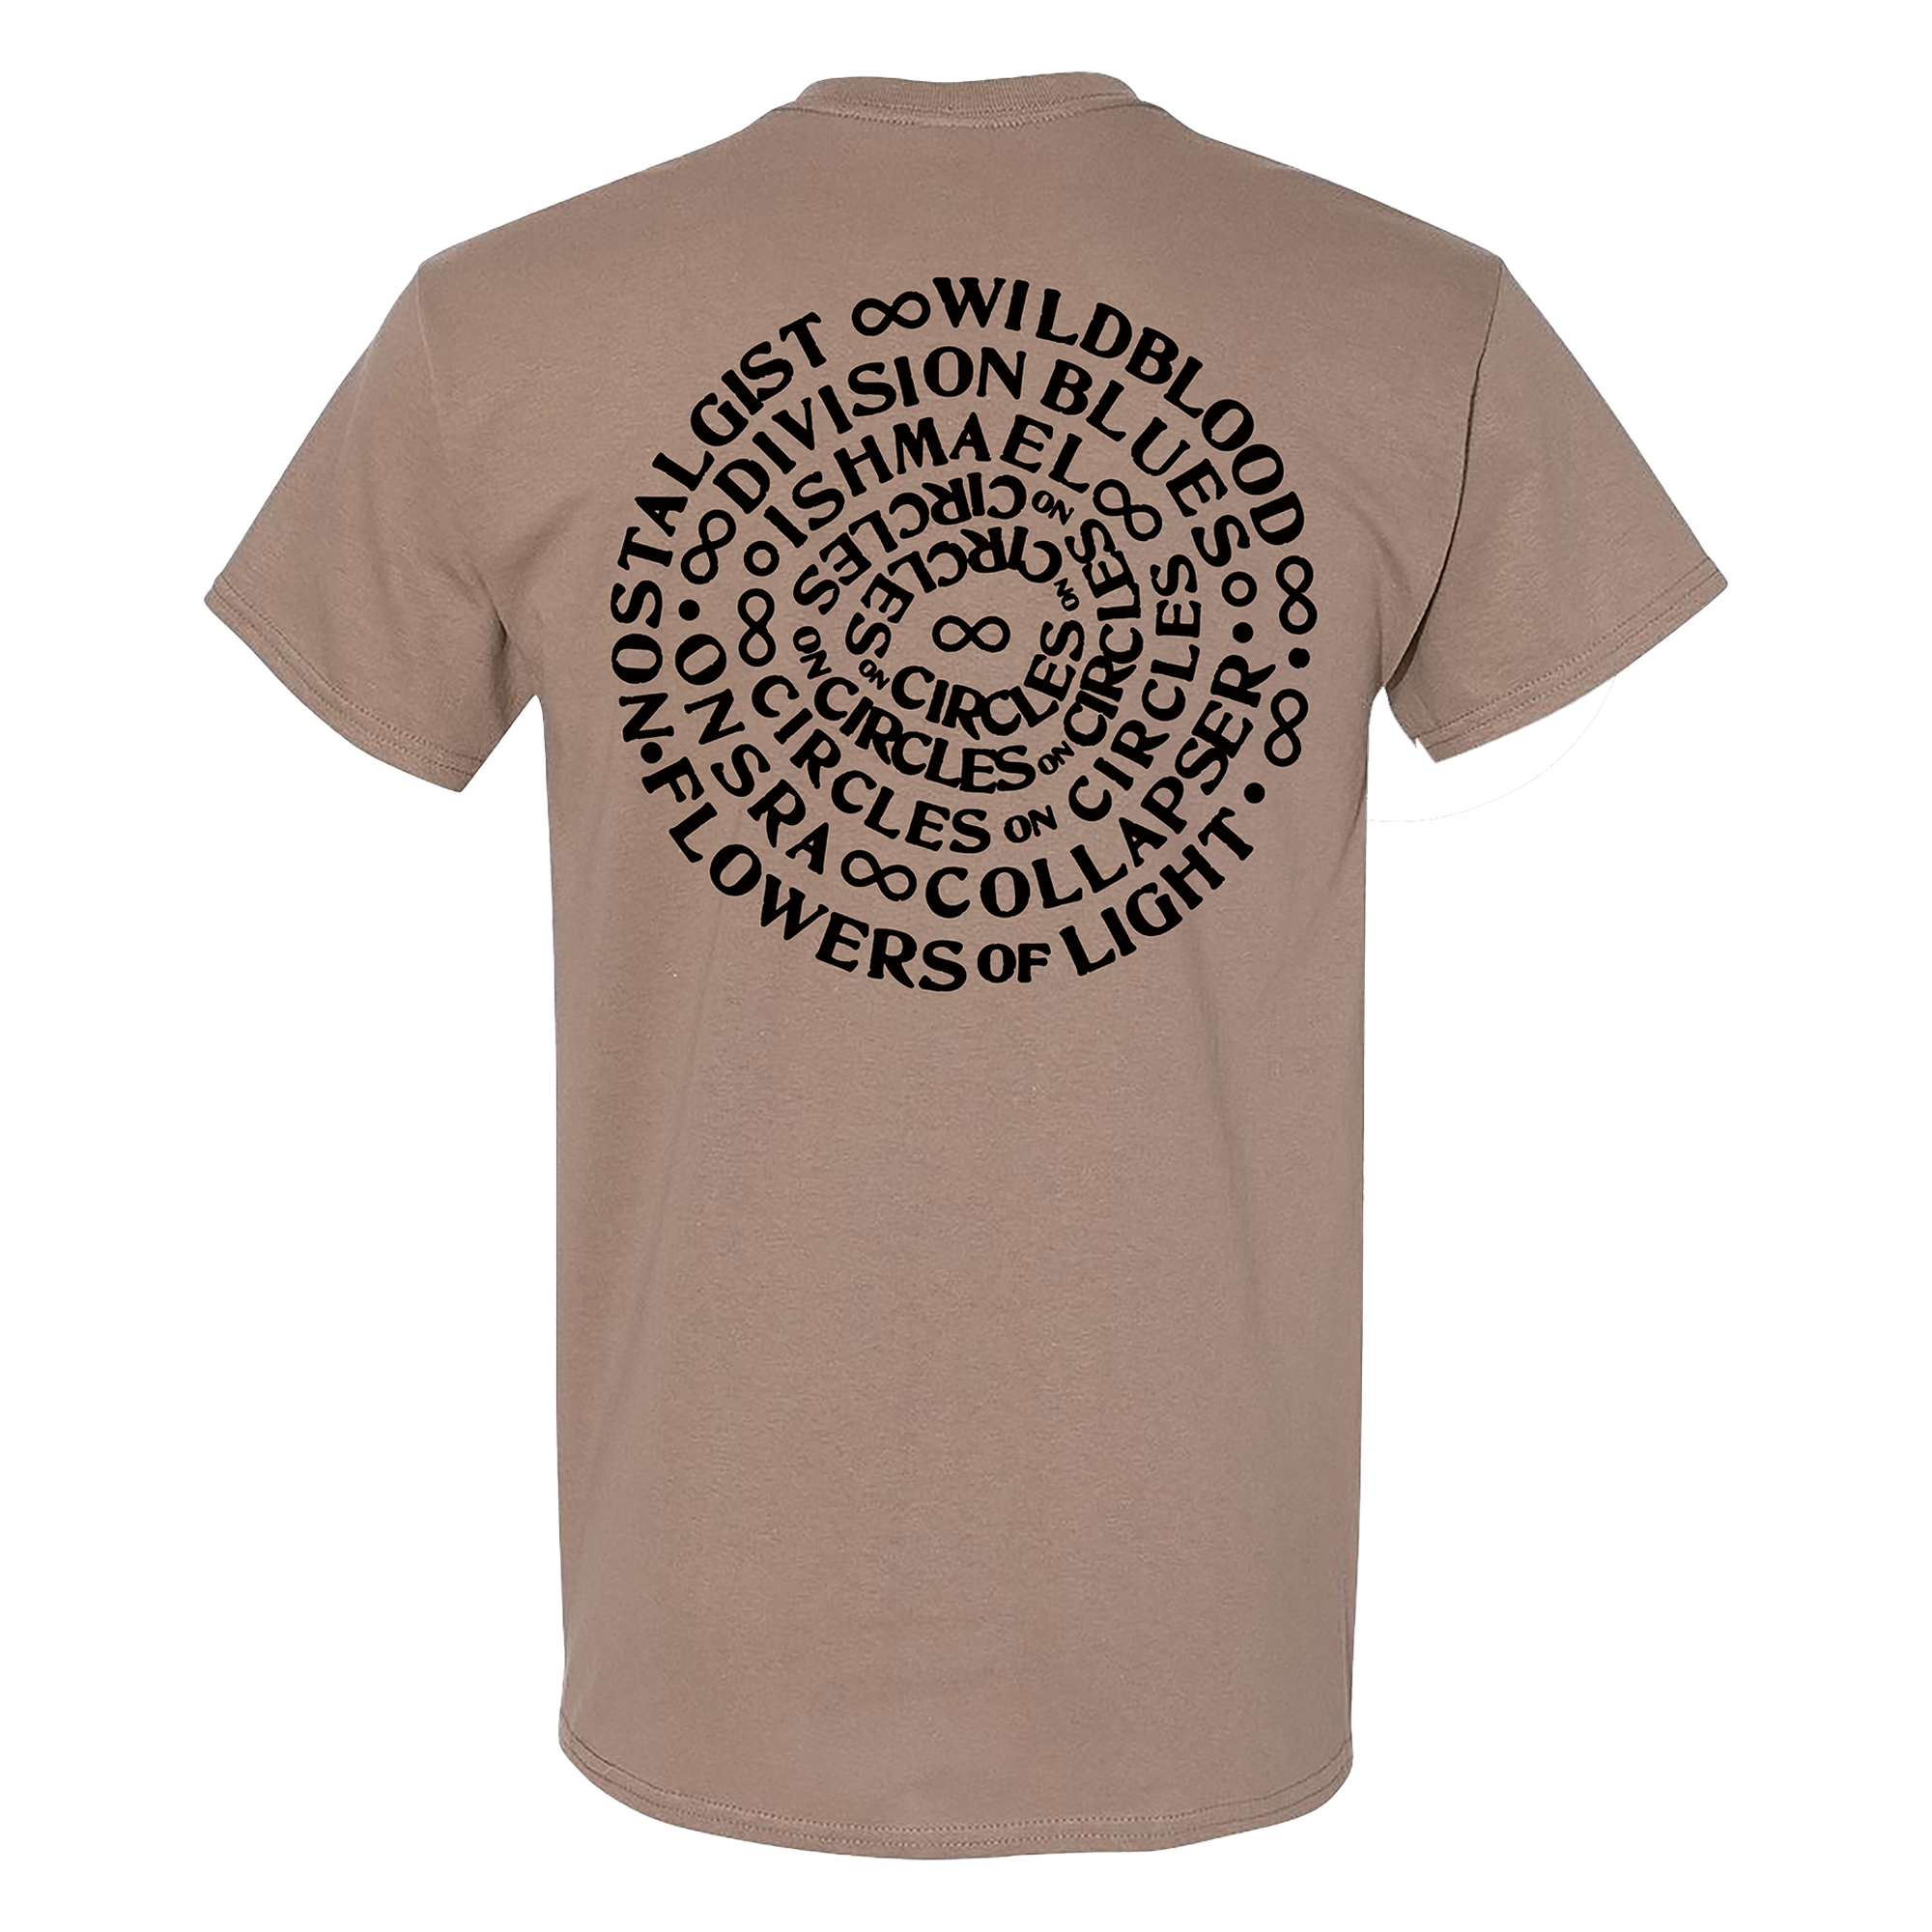 Caspian - Spiral T-Shirt - Brown